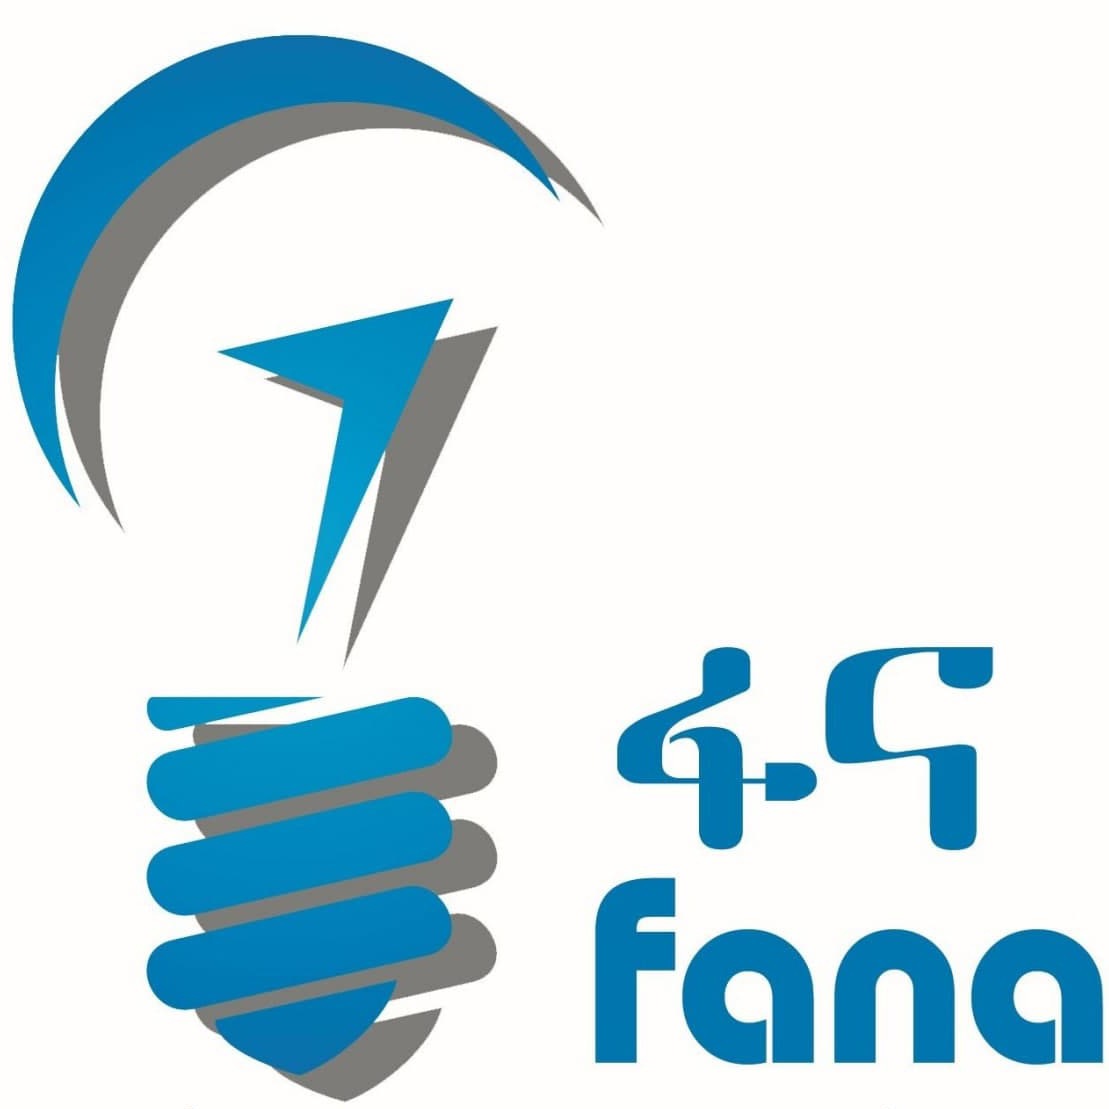 Fana Logo